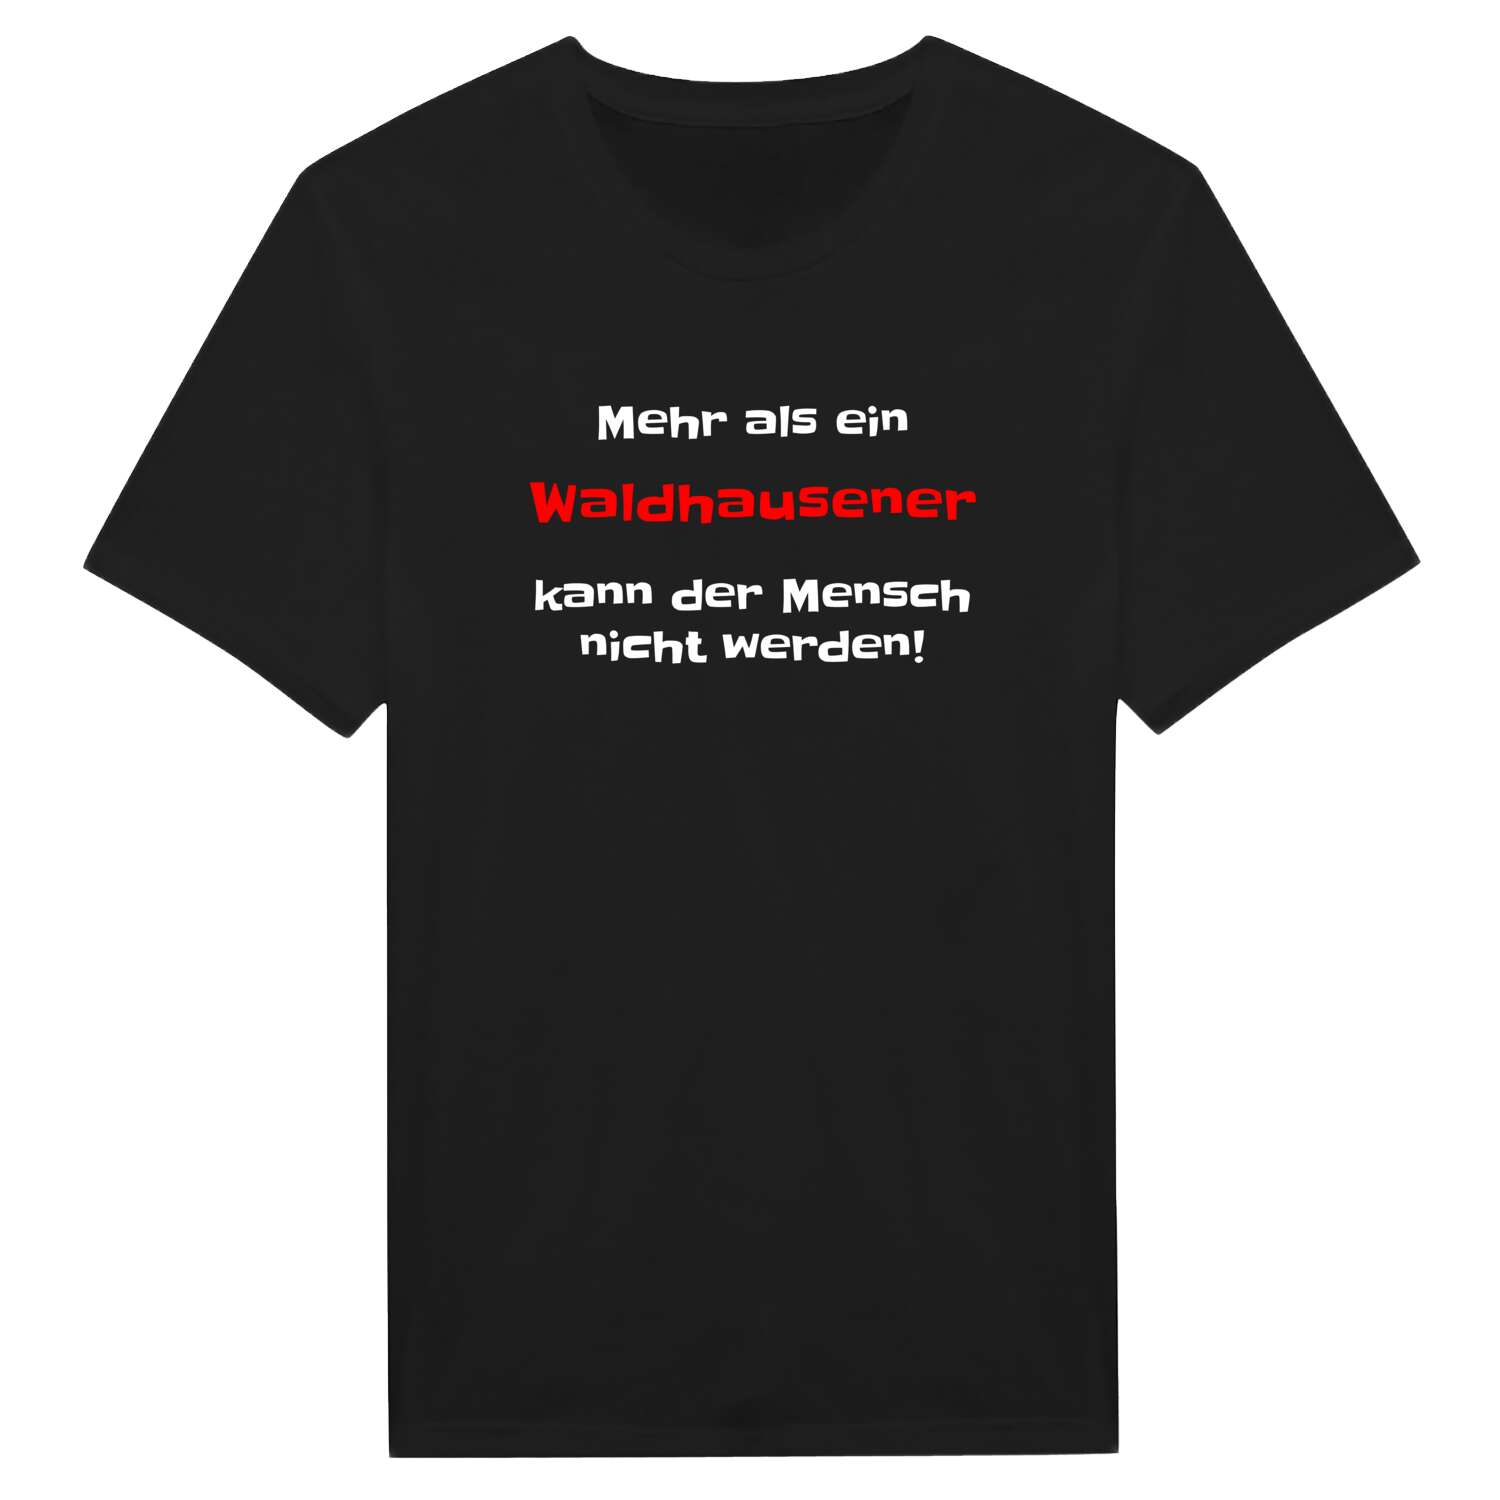 Waldhausen T-Shirt »Mehr als ein«